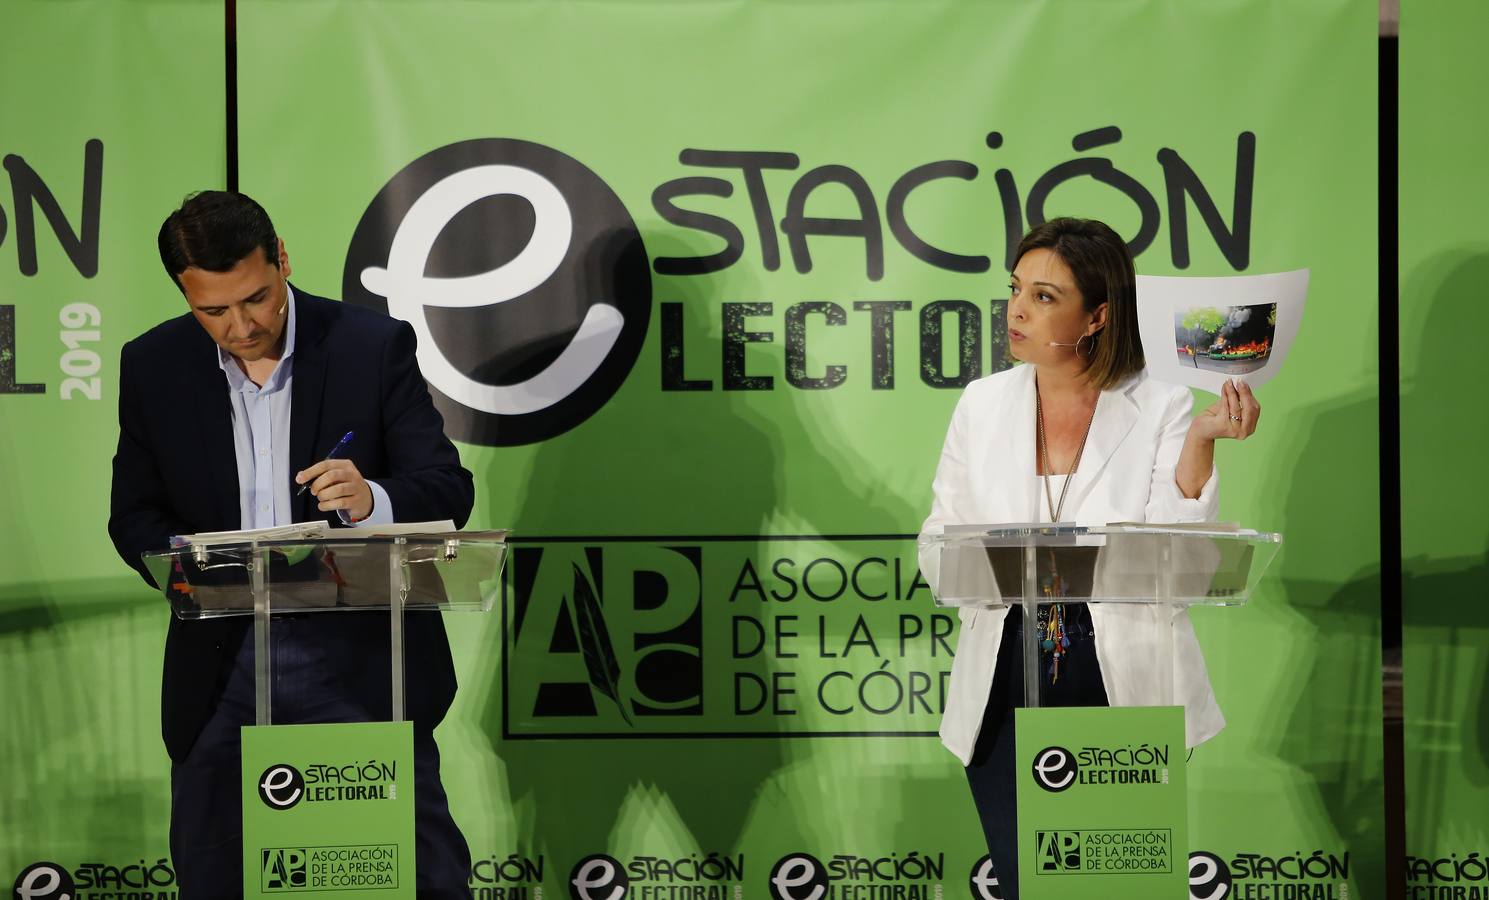 El debate electoral a la Alcaldía de Córdoba, en imágenes